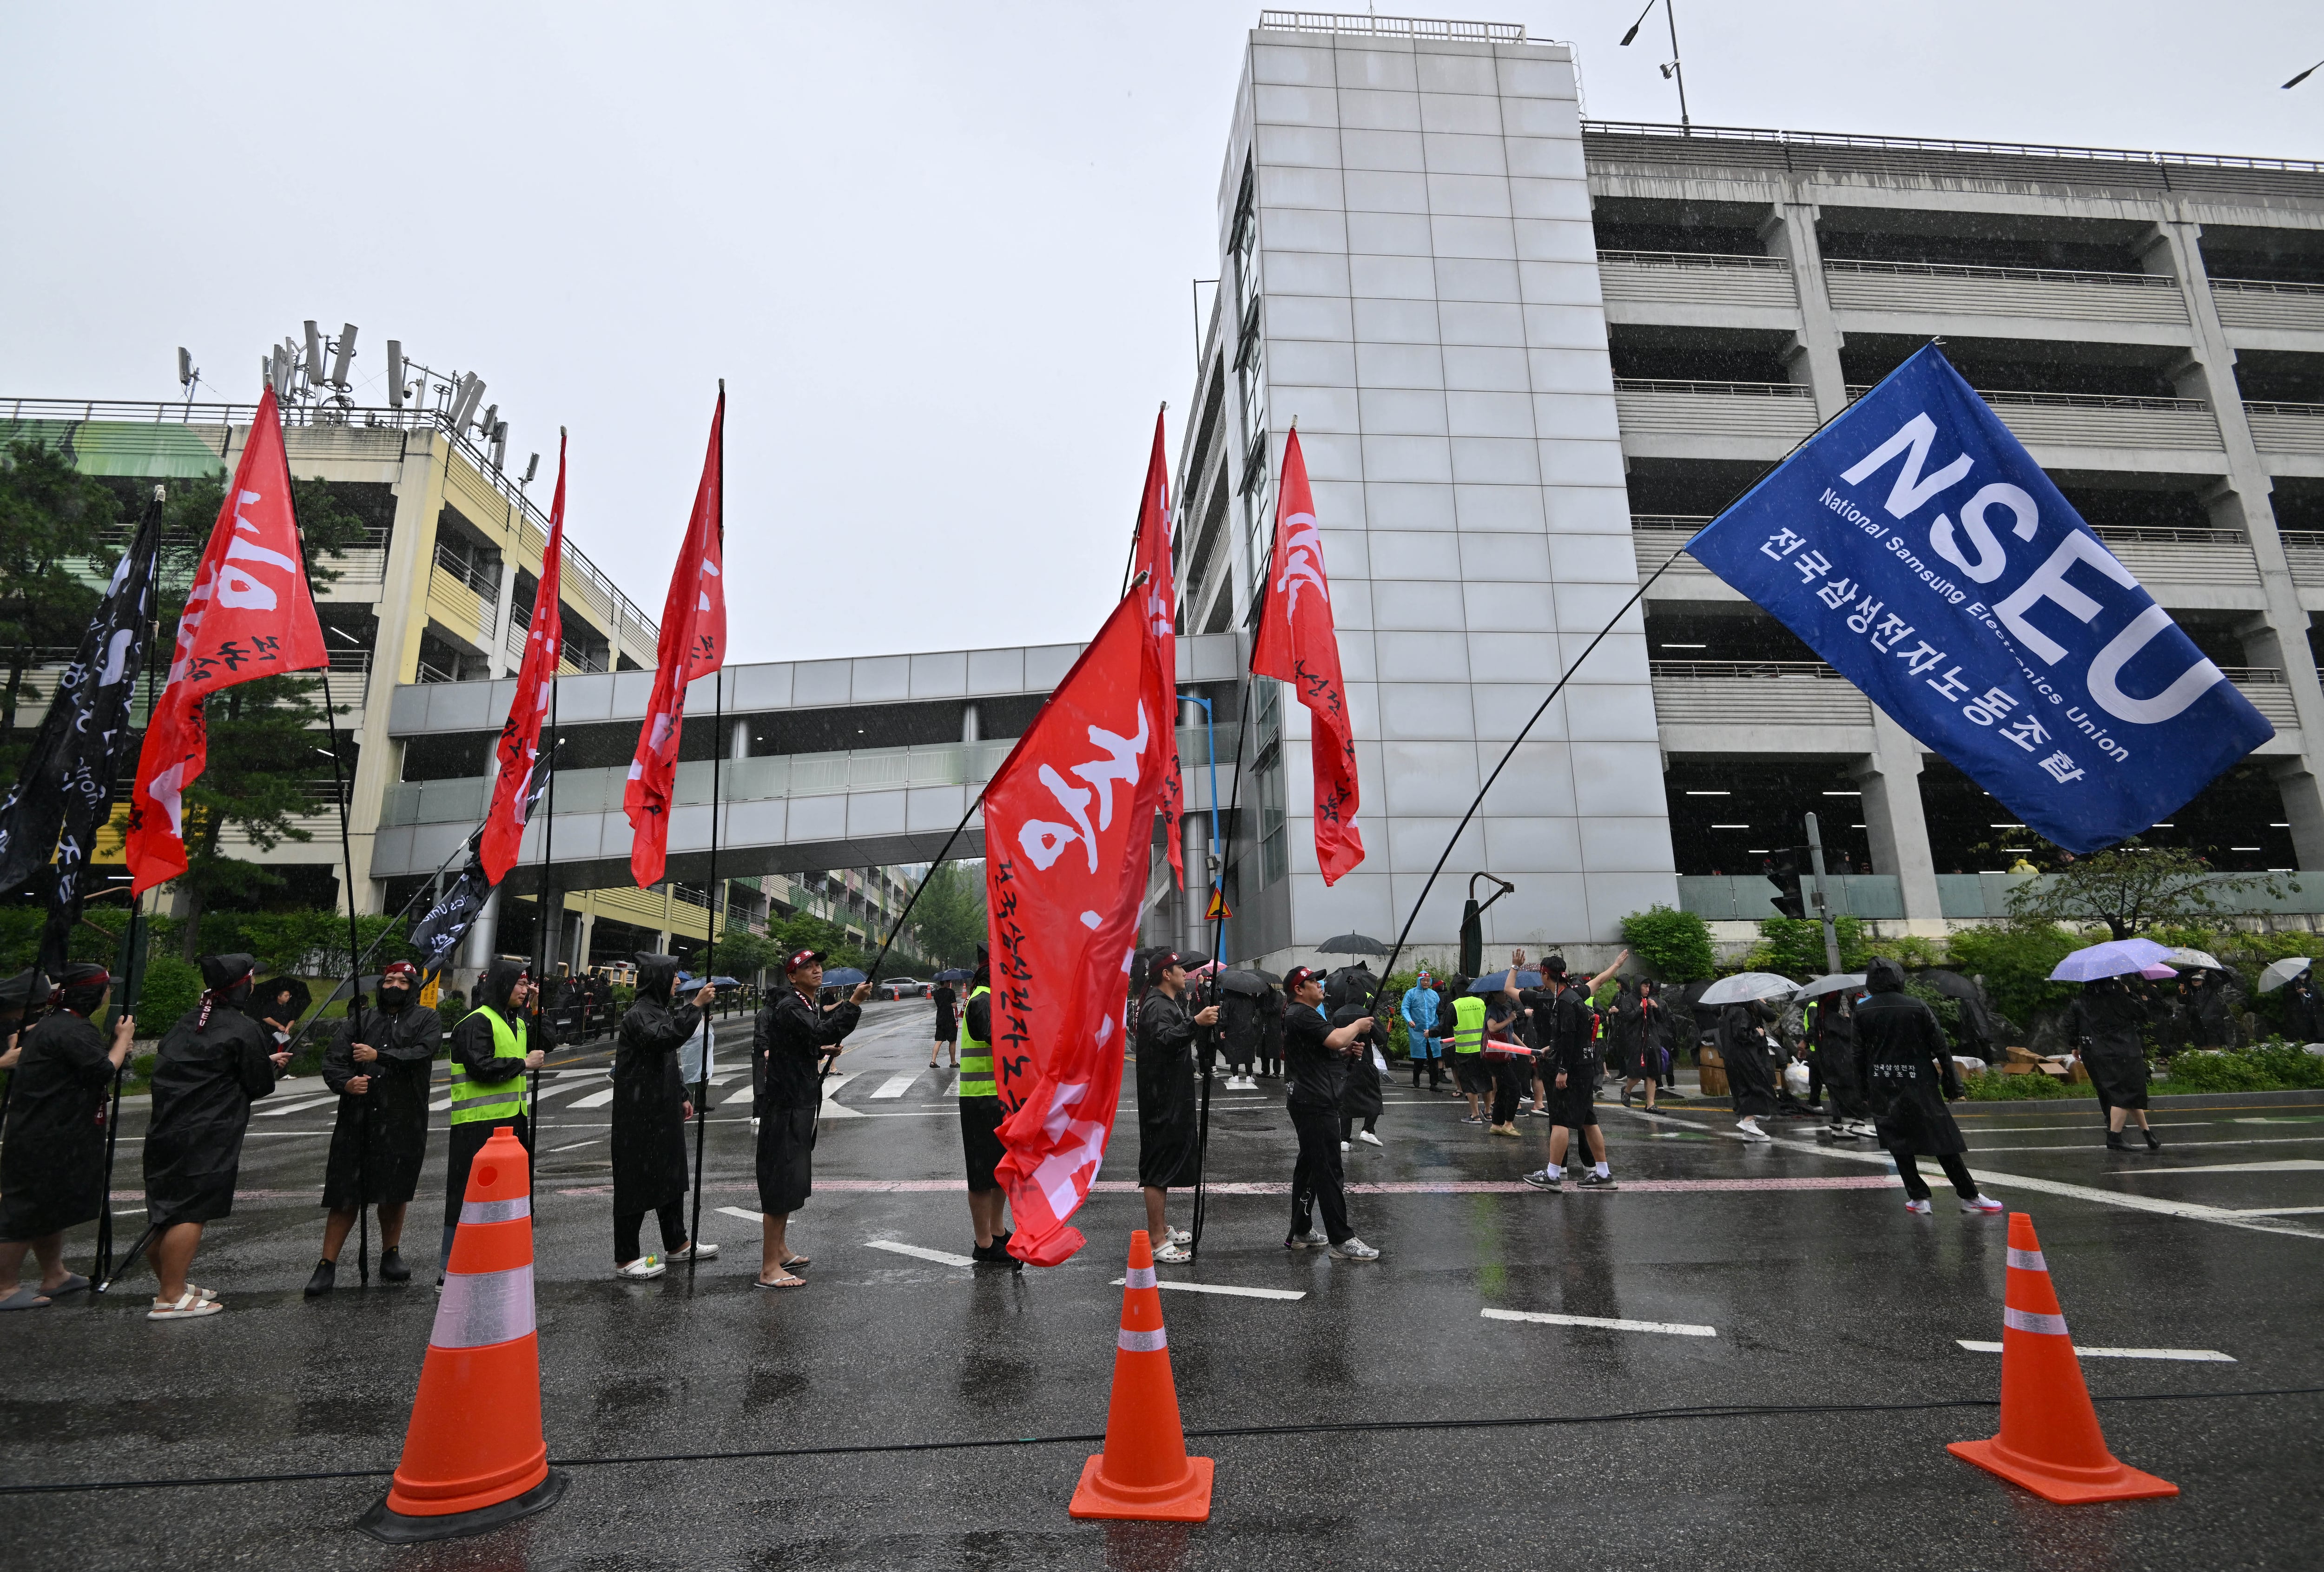 Los trabajadores exigen mejora salarial, sin embargo, especialistas señalan que la protesta no tendría el efecto deseado. (Foto: AFP)